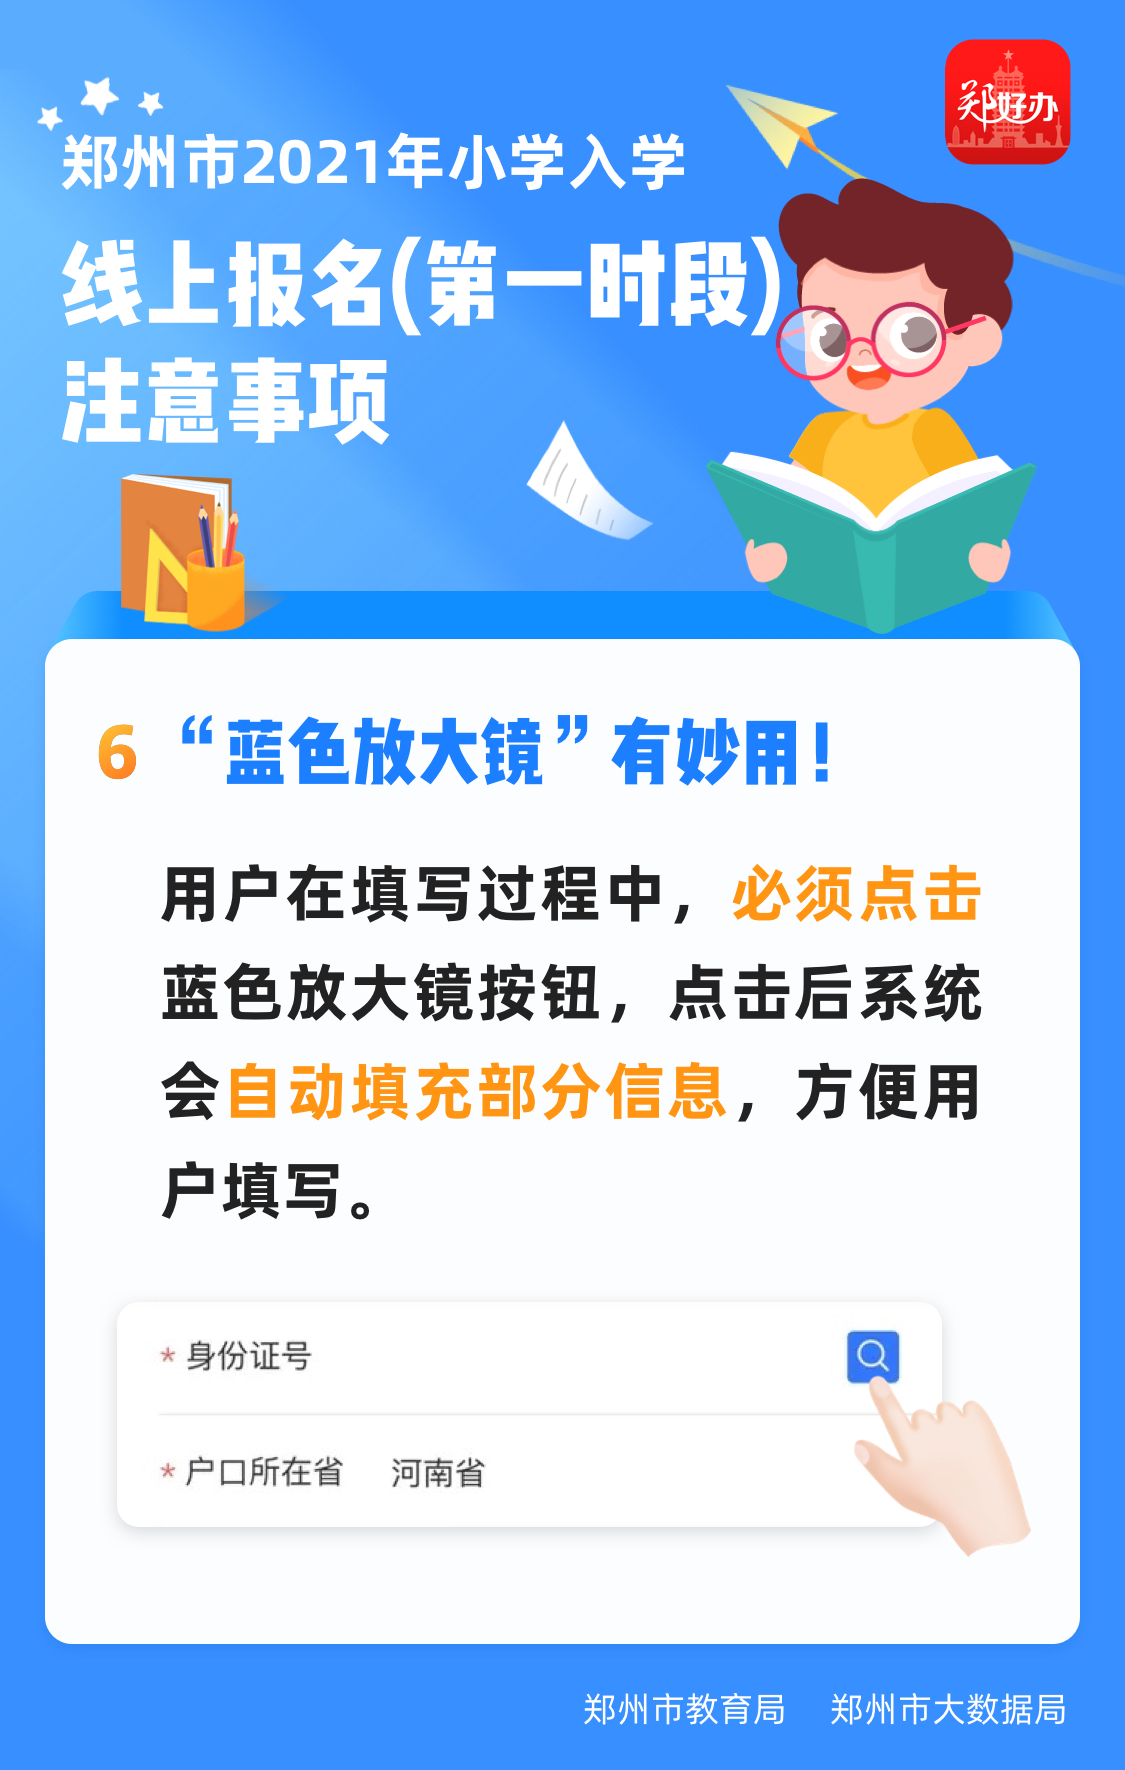 郑州市小学线上报名第一时段报名不成功还可在9月8号至10号时段进行